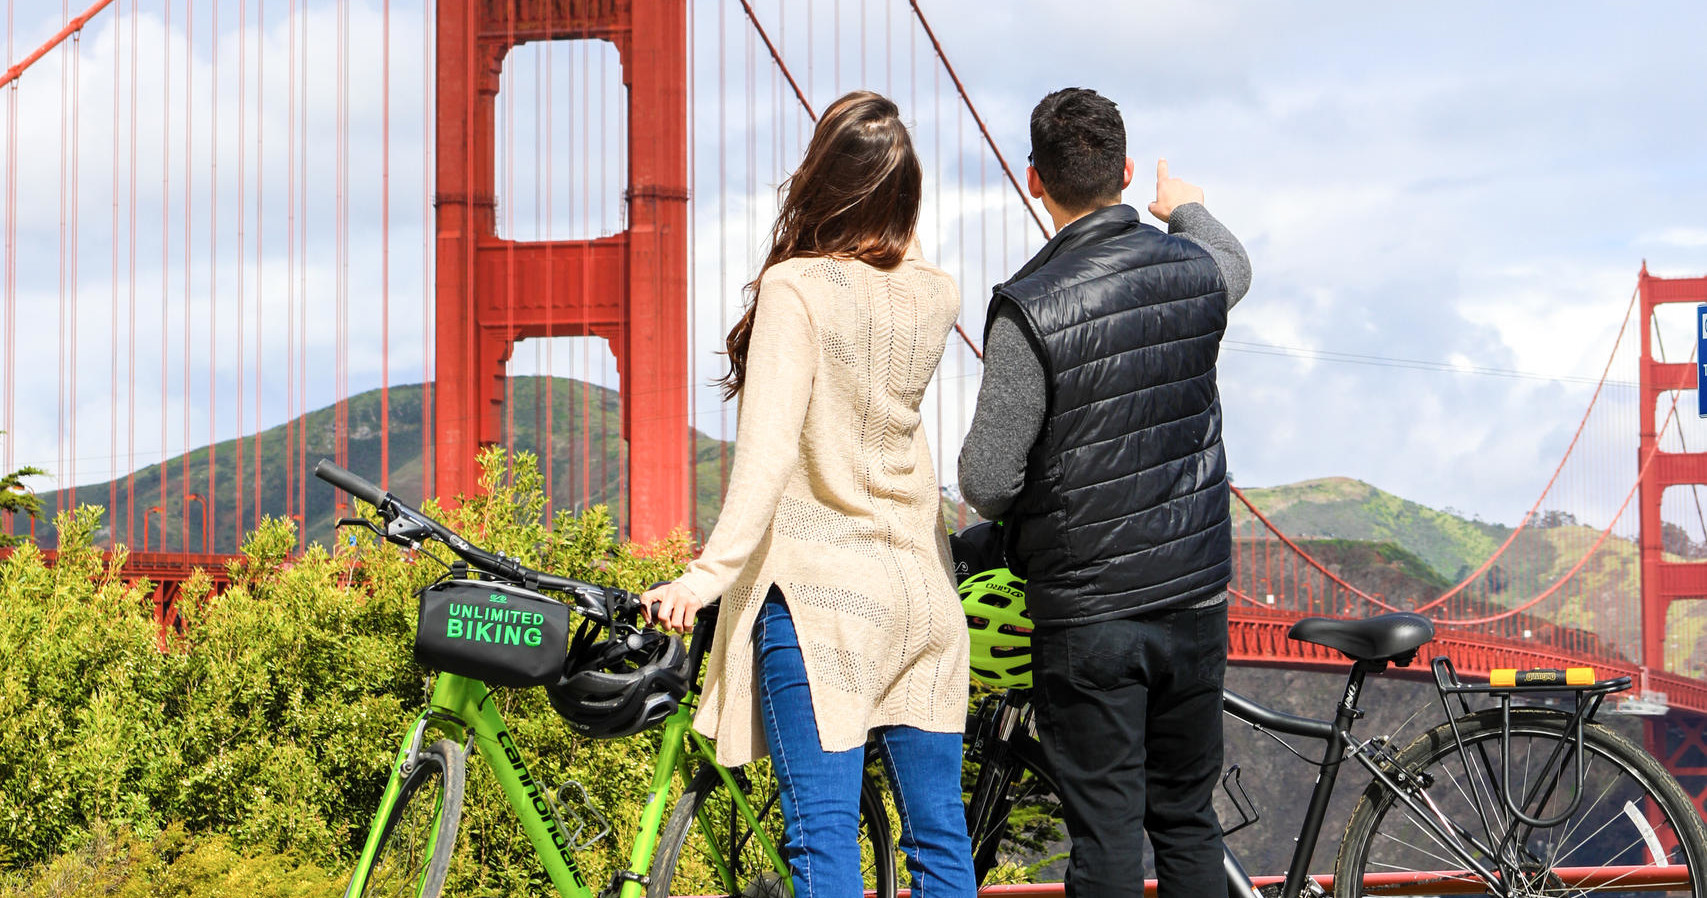 The Golden Gate Bridge Bike Rentals